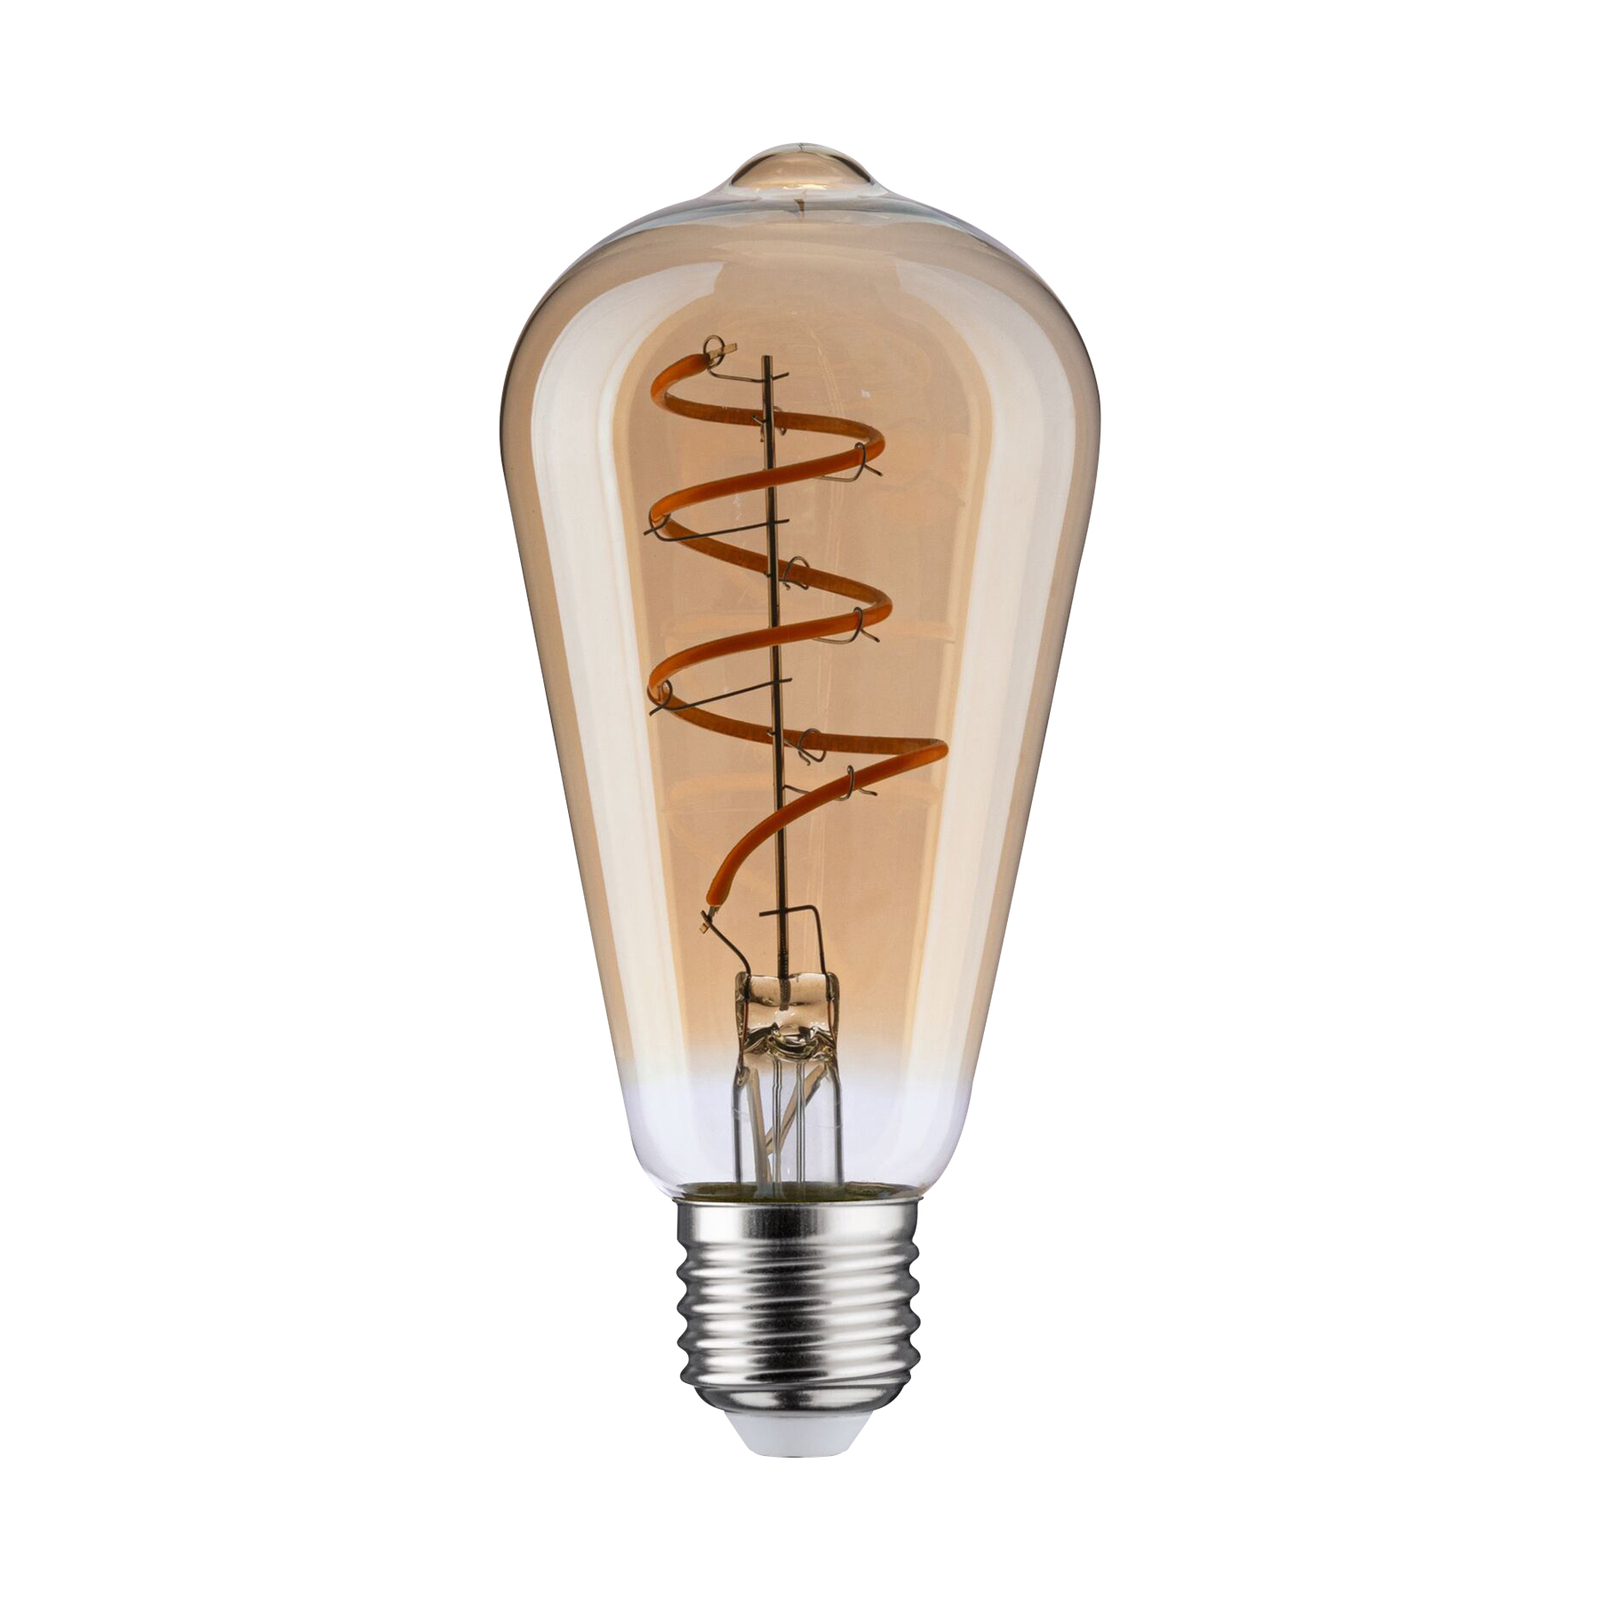 Klem hop tempo Paulmann LED lamp E27 5W ST 1.800K goud dimbaar | Lampen24.be